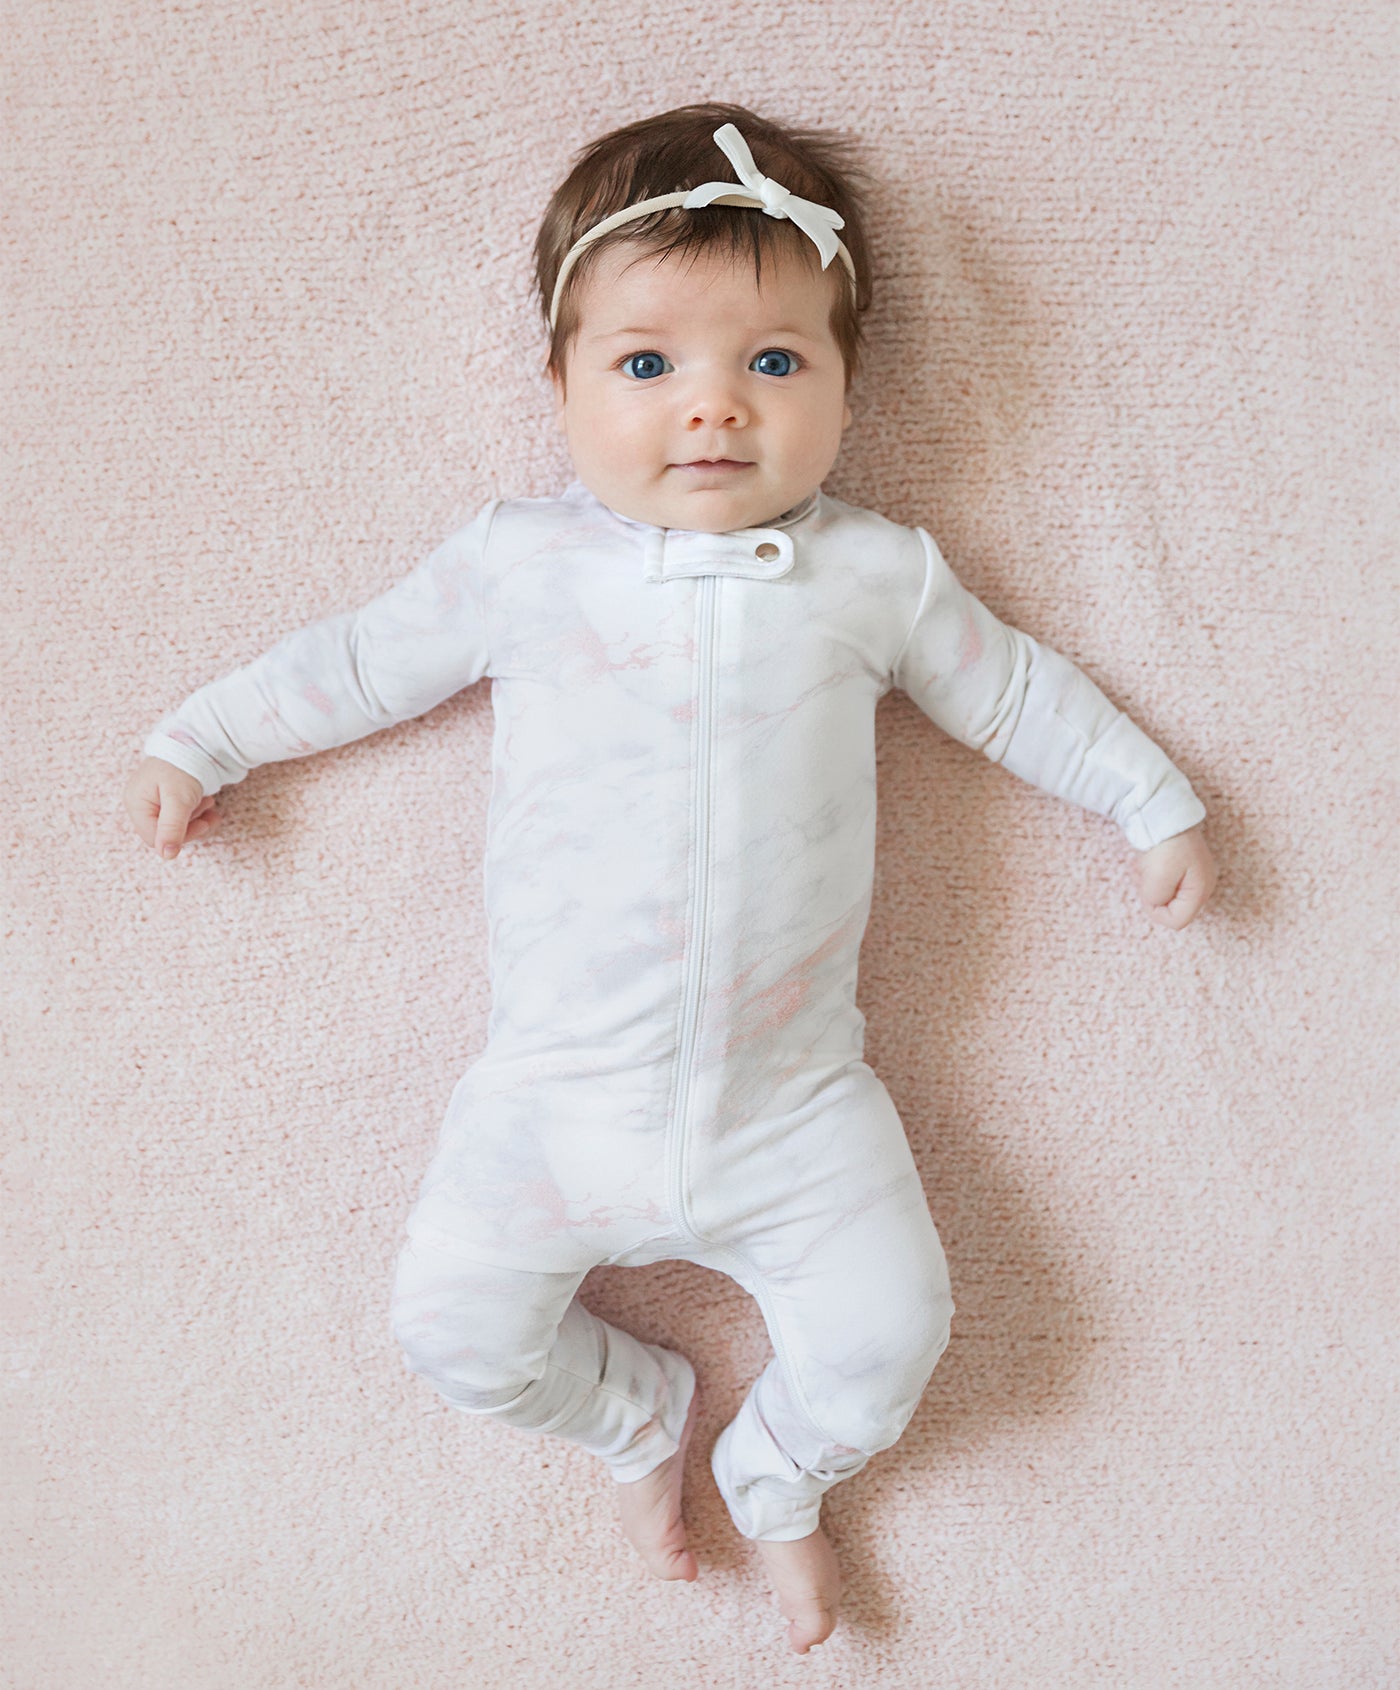 Baby's Only Lange bébé Breeze Blanc - 120x120 cm